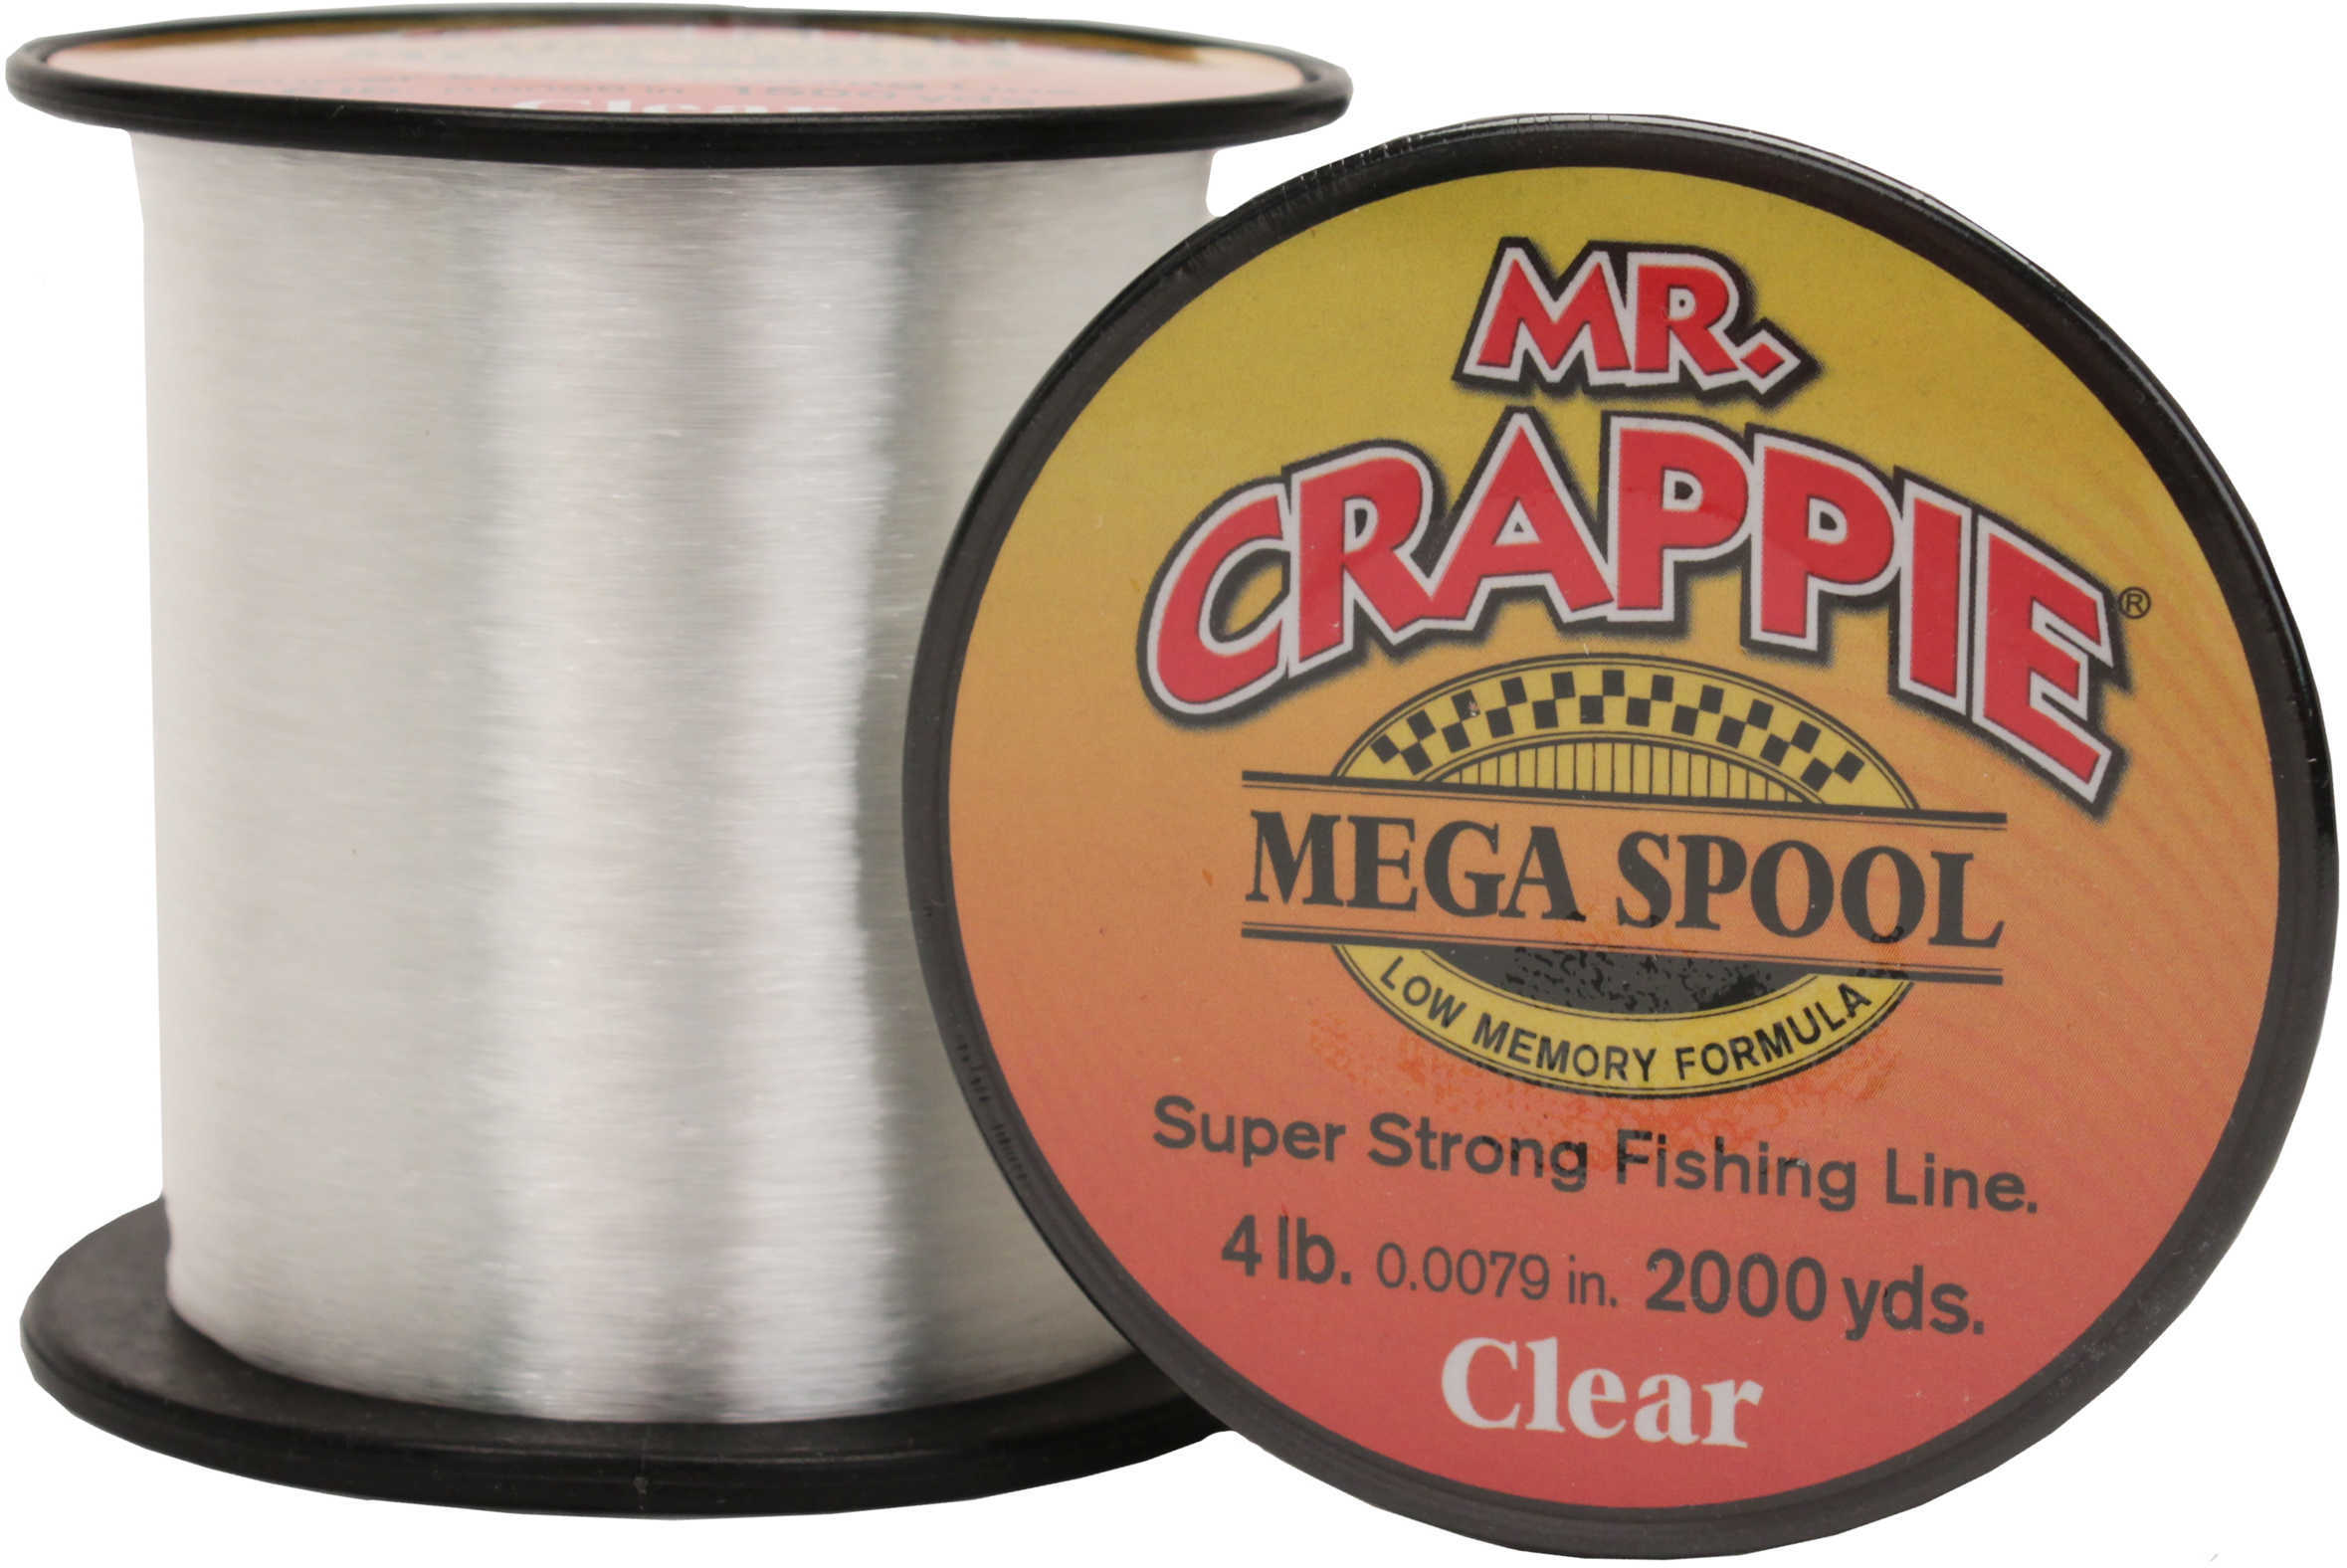 Lew's Mr. Crappie Mega Spools Clear, 4 lb Md: MC4CL